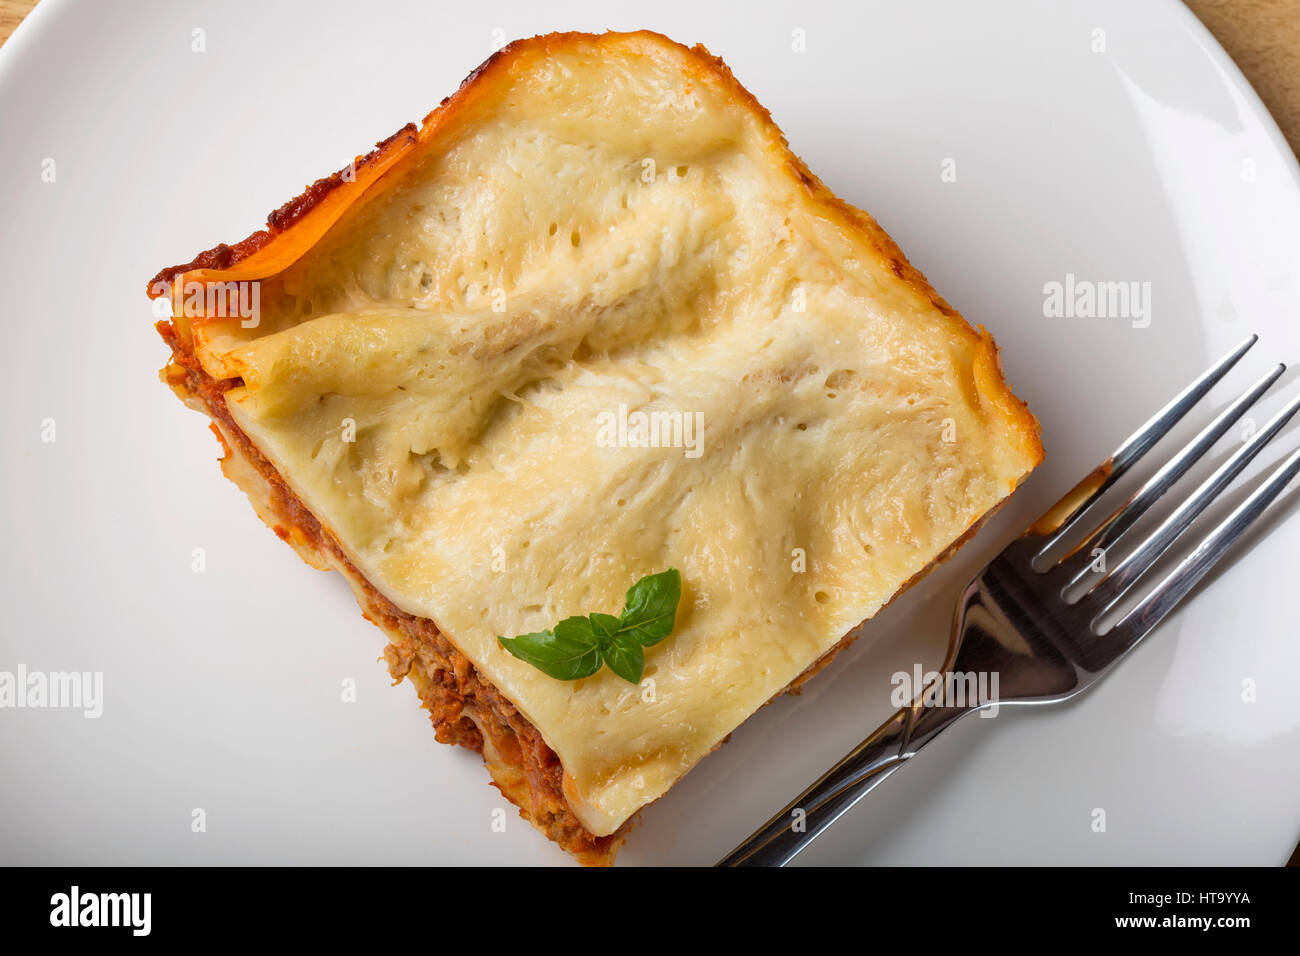 Casalingo italiano lasagne bolognesi sulla piastra bianca con forcella e basilico Foto Stock